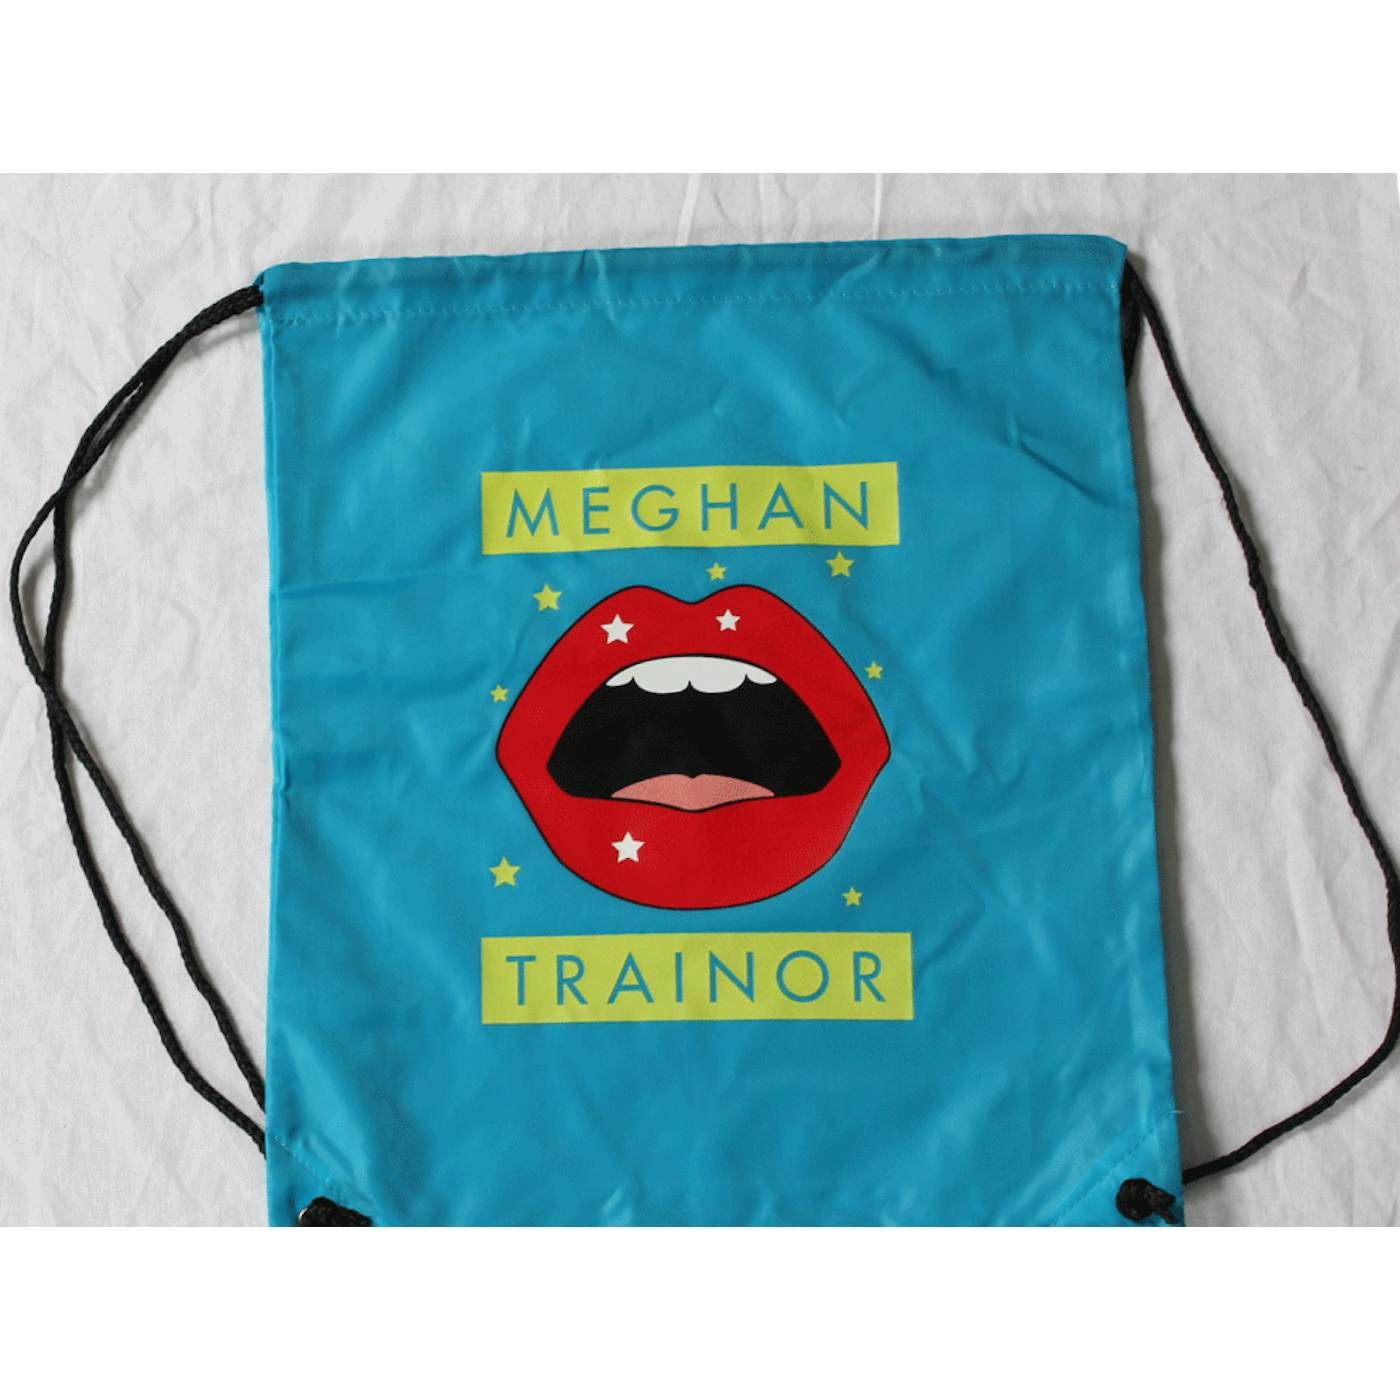 Meghan Trainor Drawstring Bag Aqua